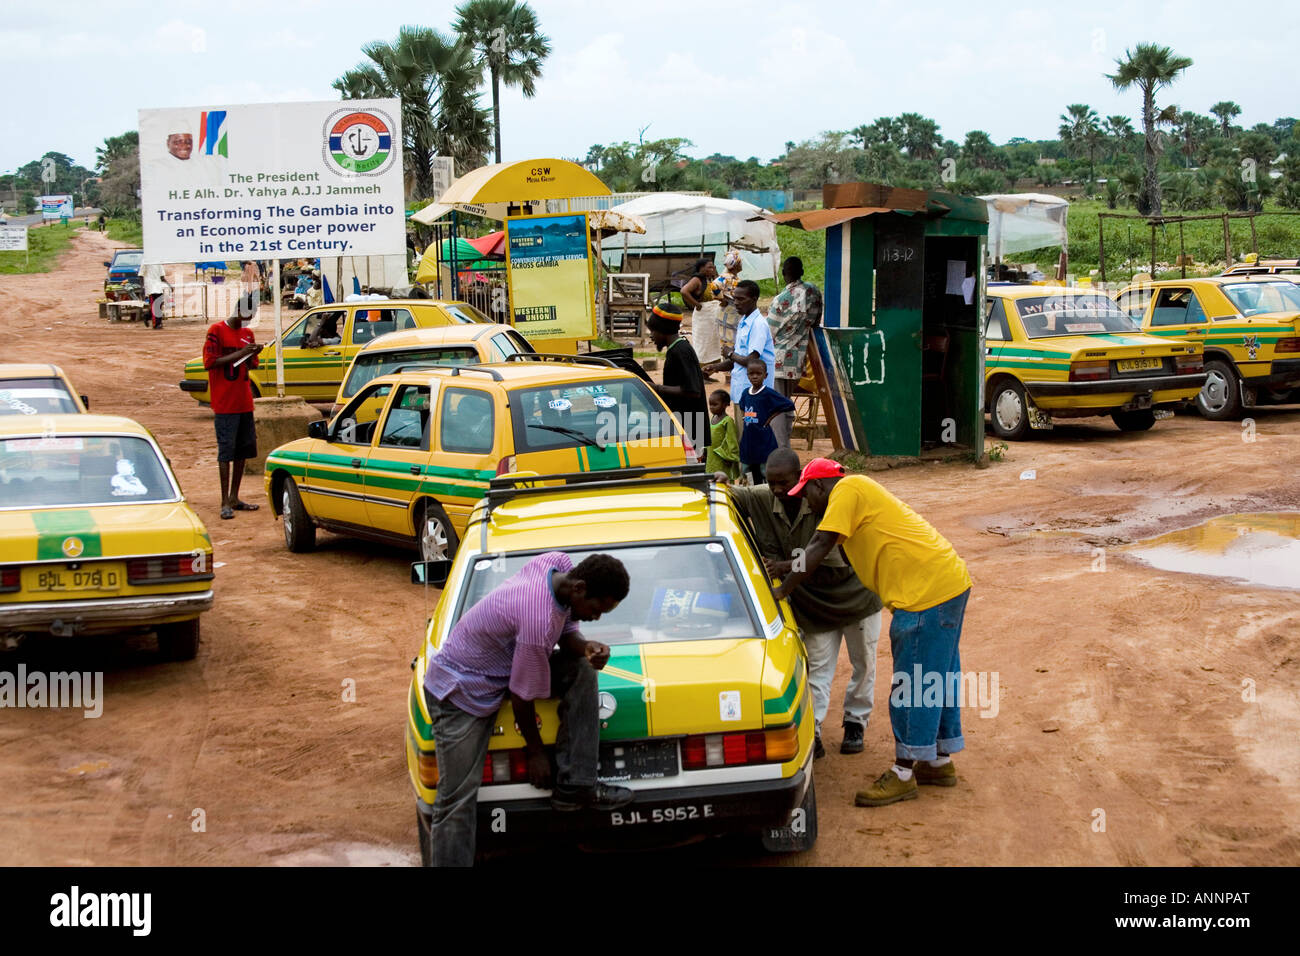 Station de taxi par la route en Gambie avec affiche de propagande sur le Président Yahya AJJ Jammeh en arrière-plan. Banque D'Images